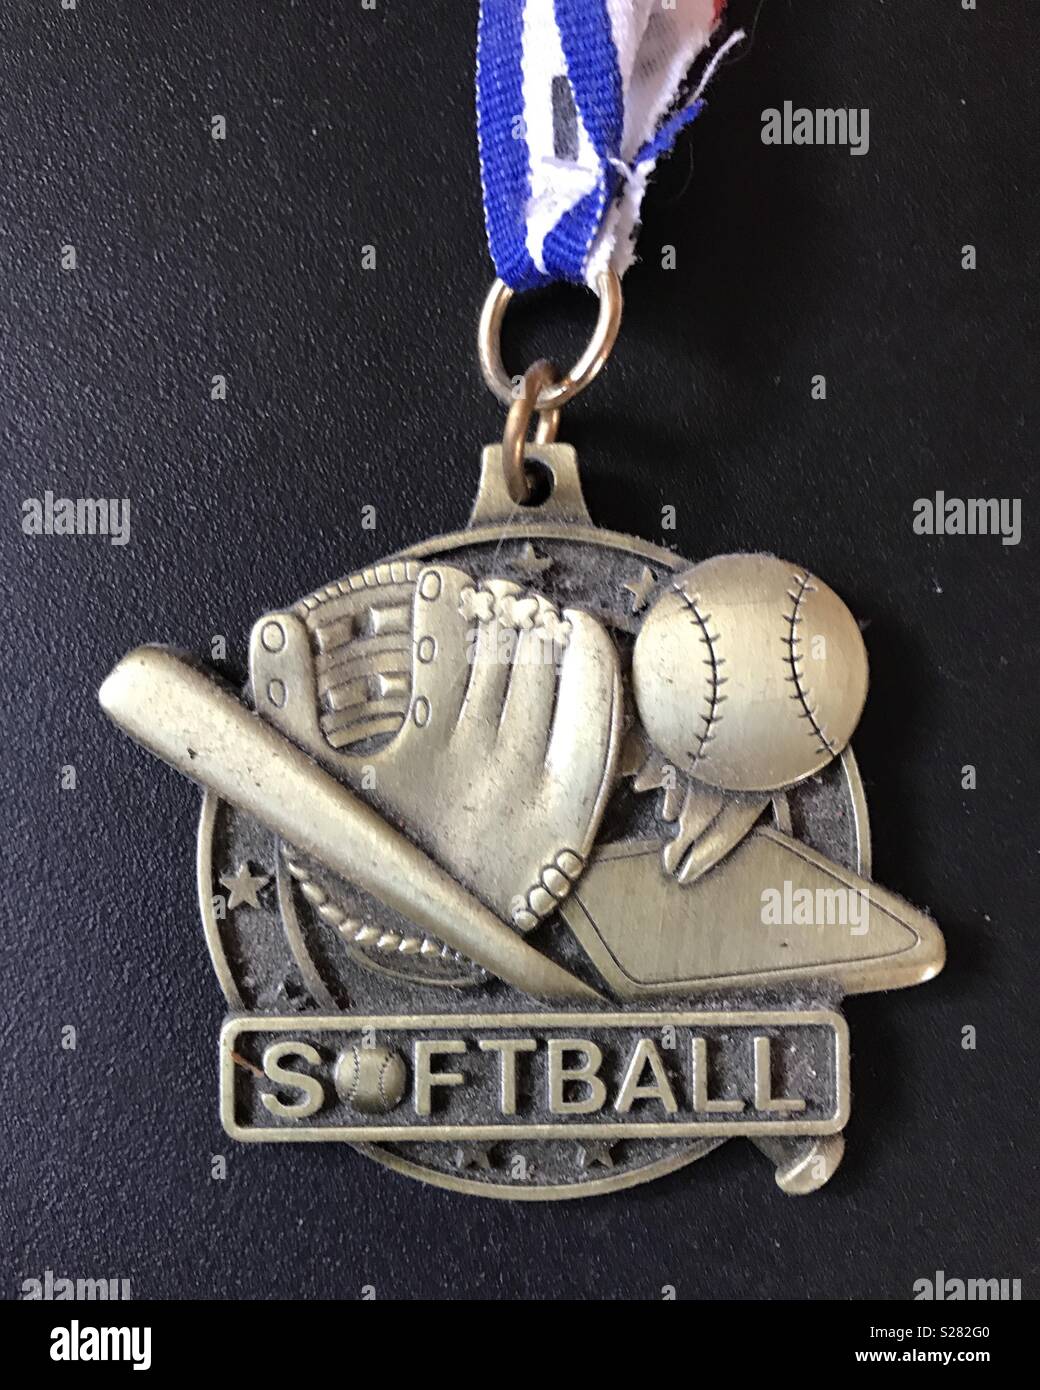 Médaille de softball Banque D'Images